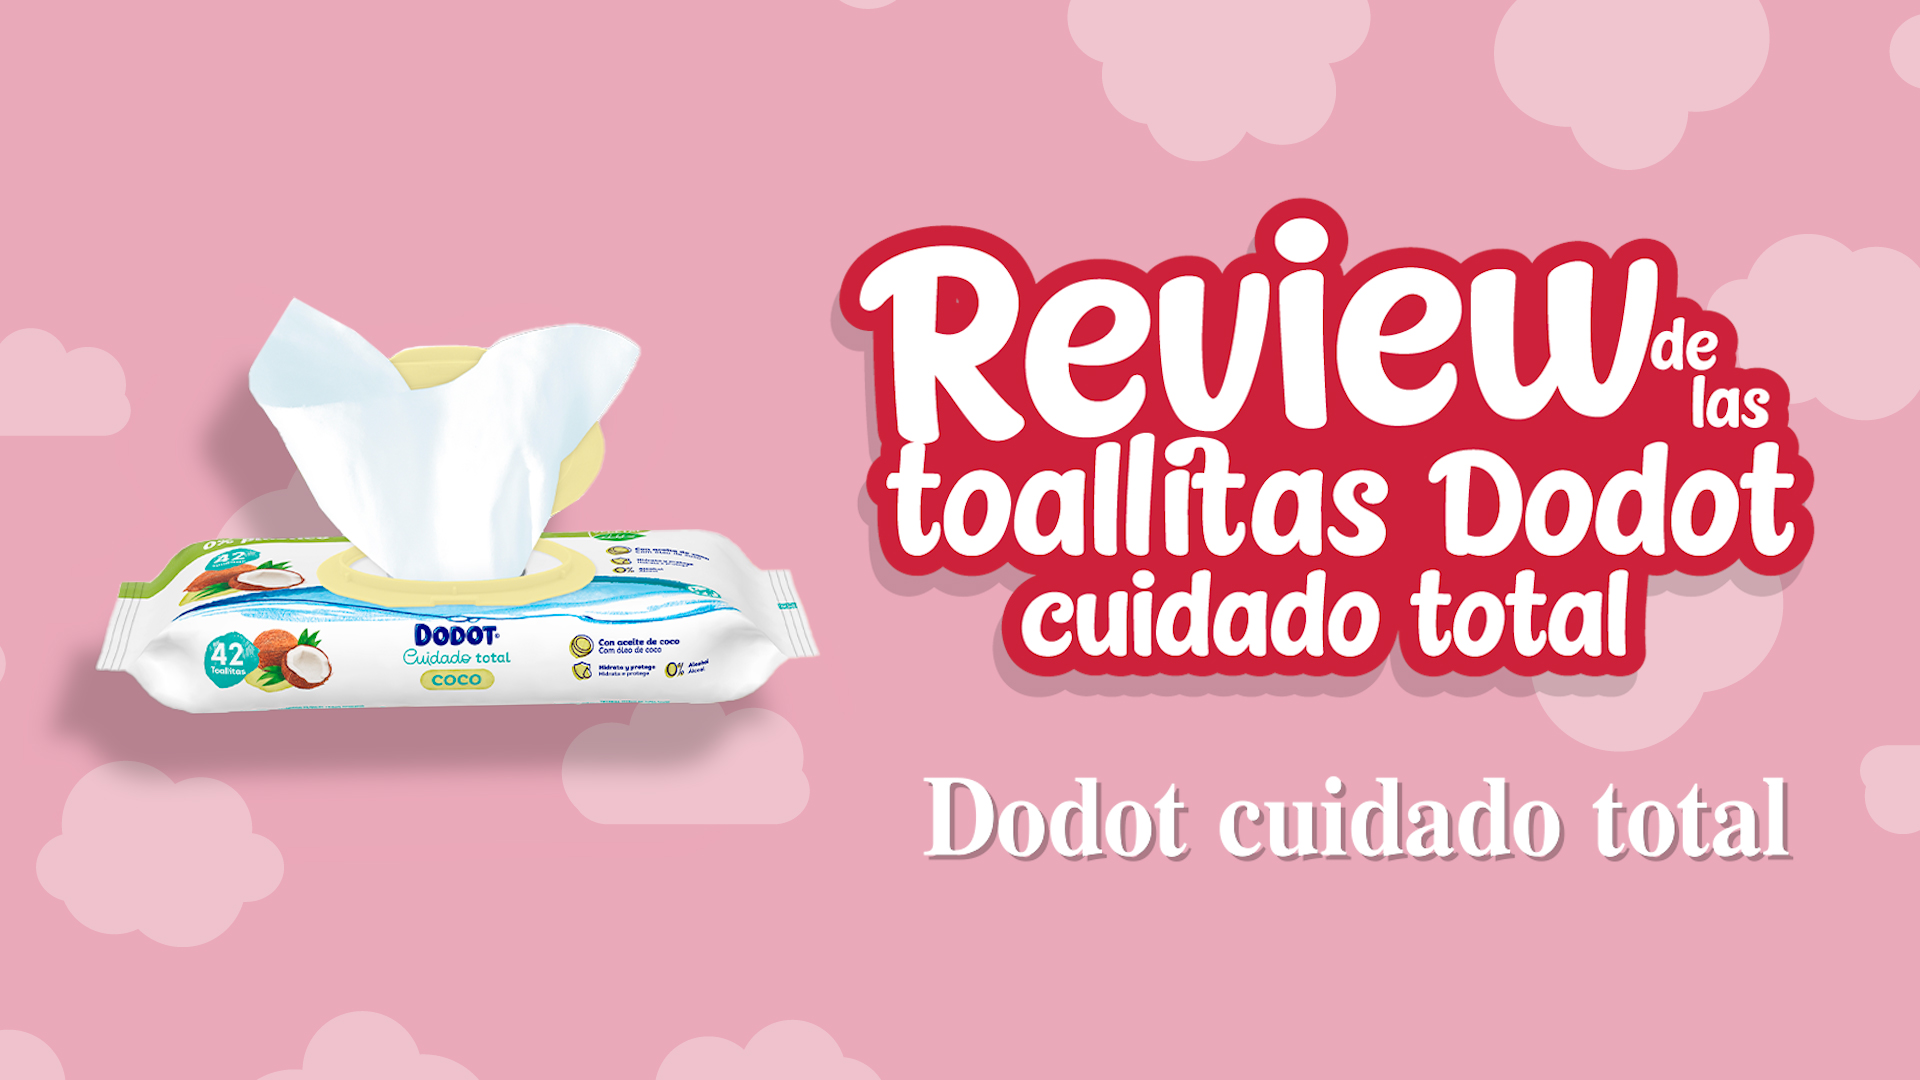 Opiniones de las toallitas Dodot cuidado total de coco - Review de las toallitas Dodot cuidado total de coco